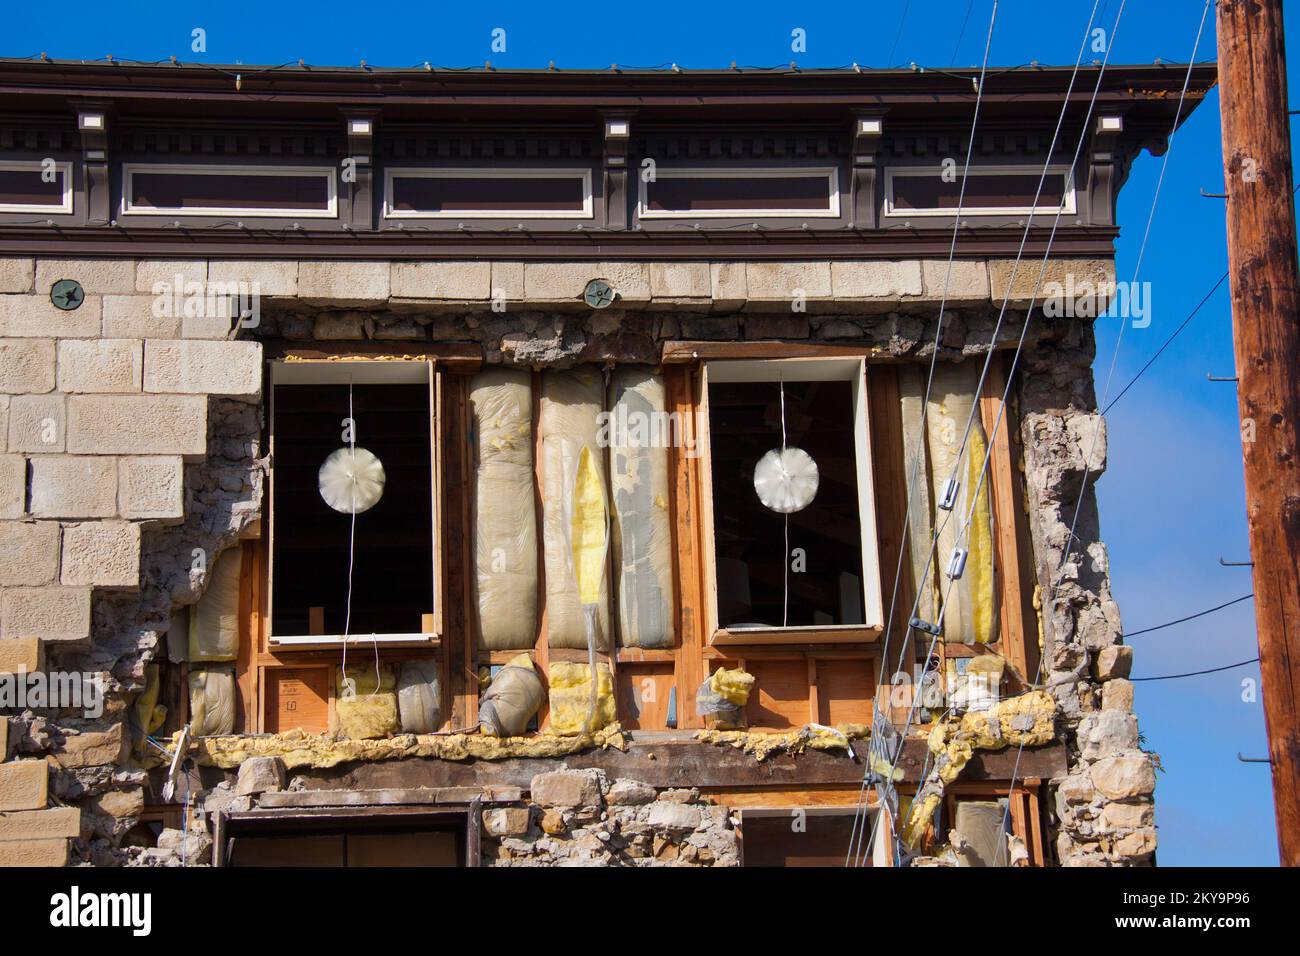 Napa, Kalifornien, 24. August 2014 das Vintner-Kollektivgebäude in der Innenstadt von Napa wurde durch ein Erdbeben der Stärke 6,0 schwer beschädigt, das die Gegend erschütterte. Fotos zu Katastrophen- und Notfallmanagementprogrammen, Aktivitäten und Beamten Stockfoto